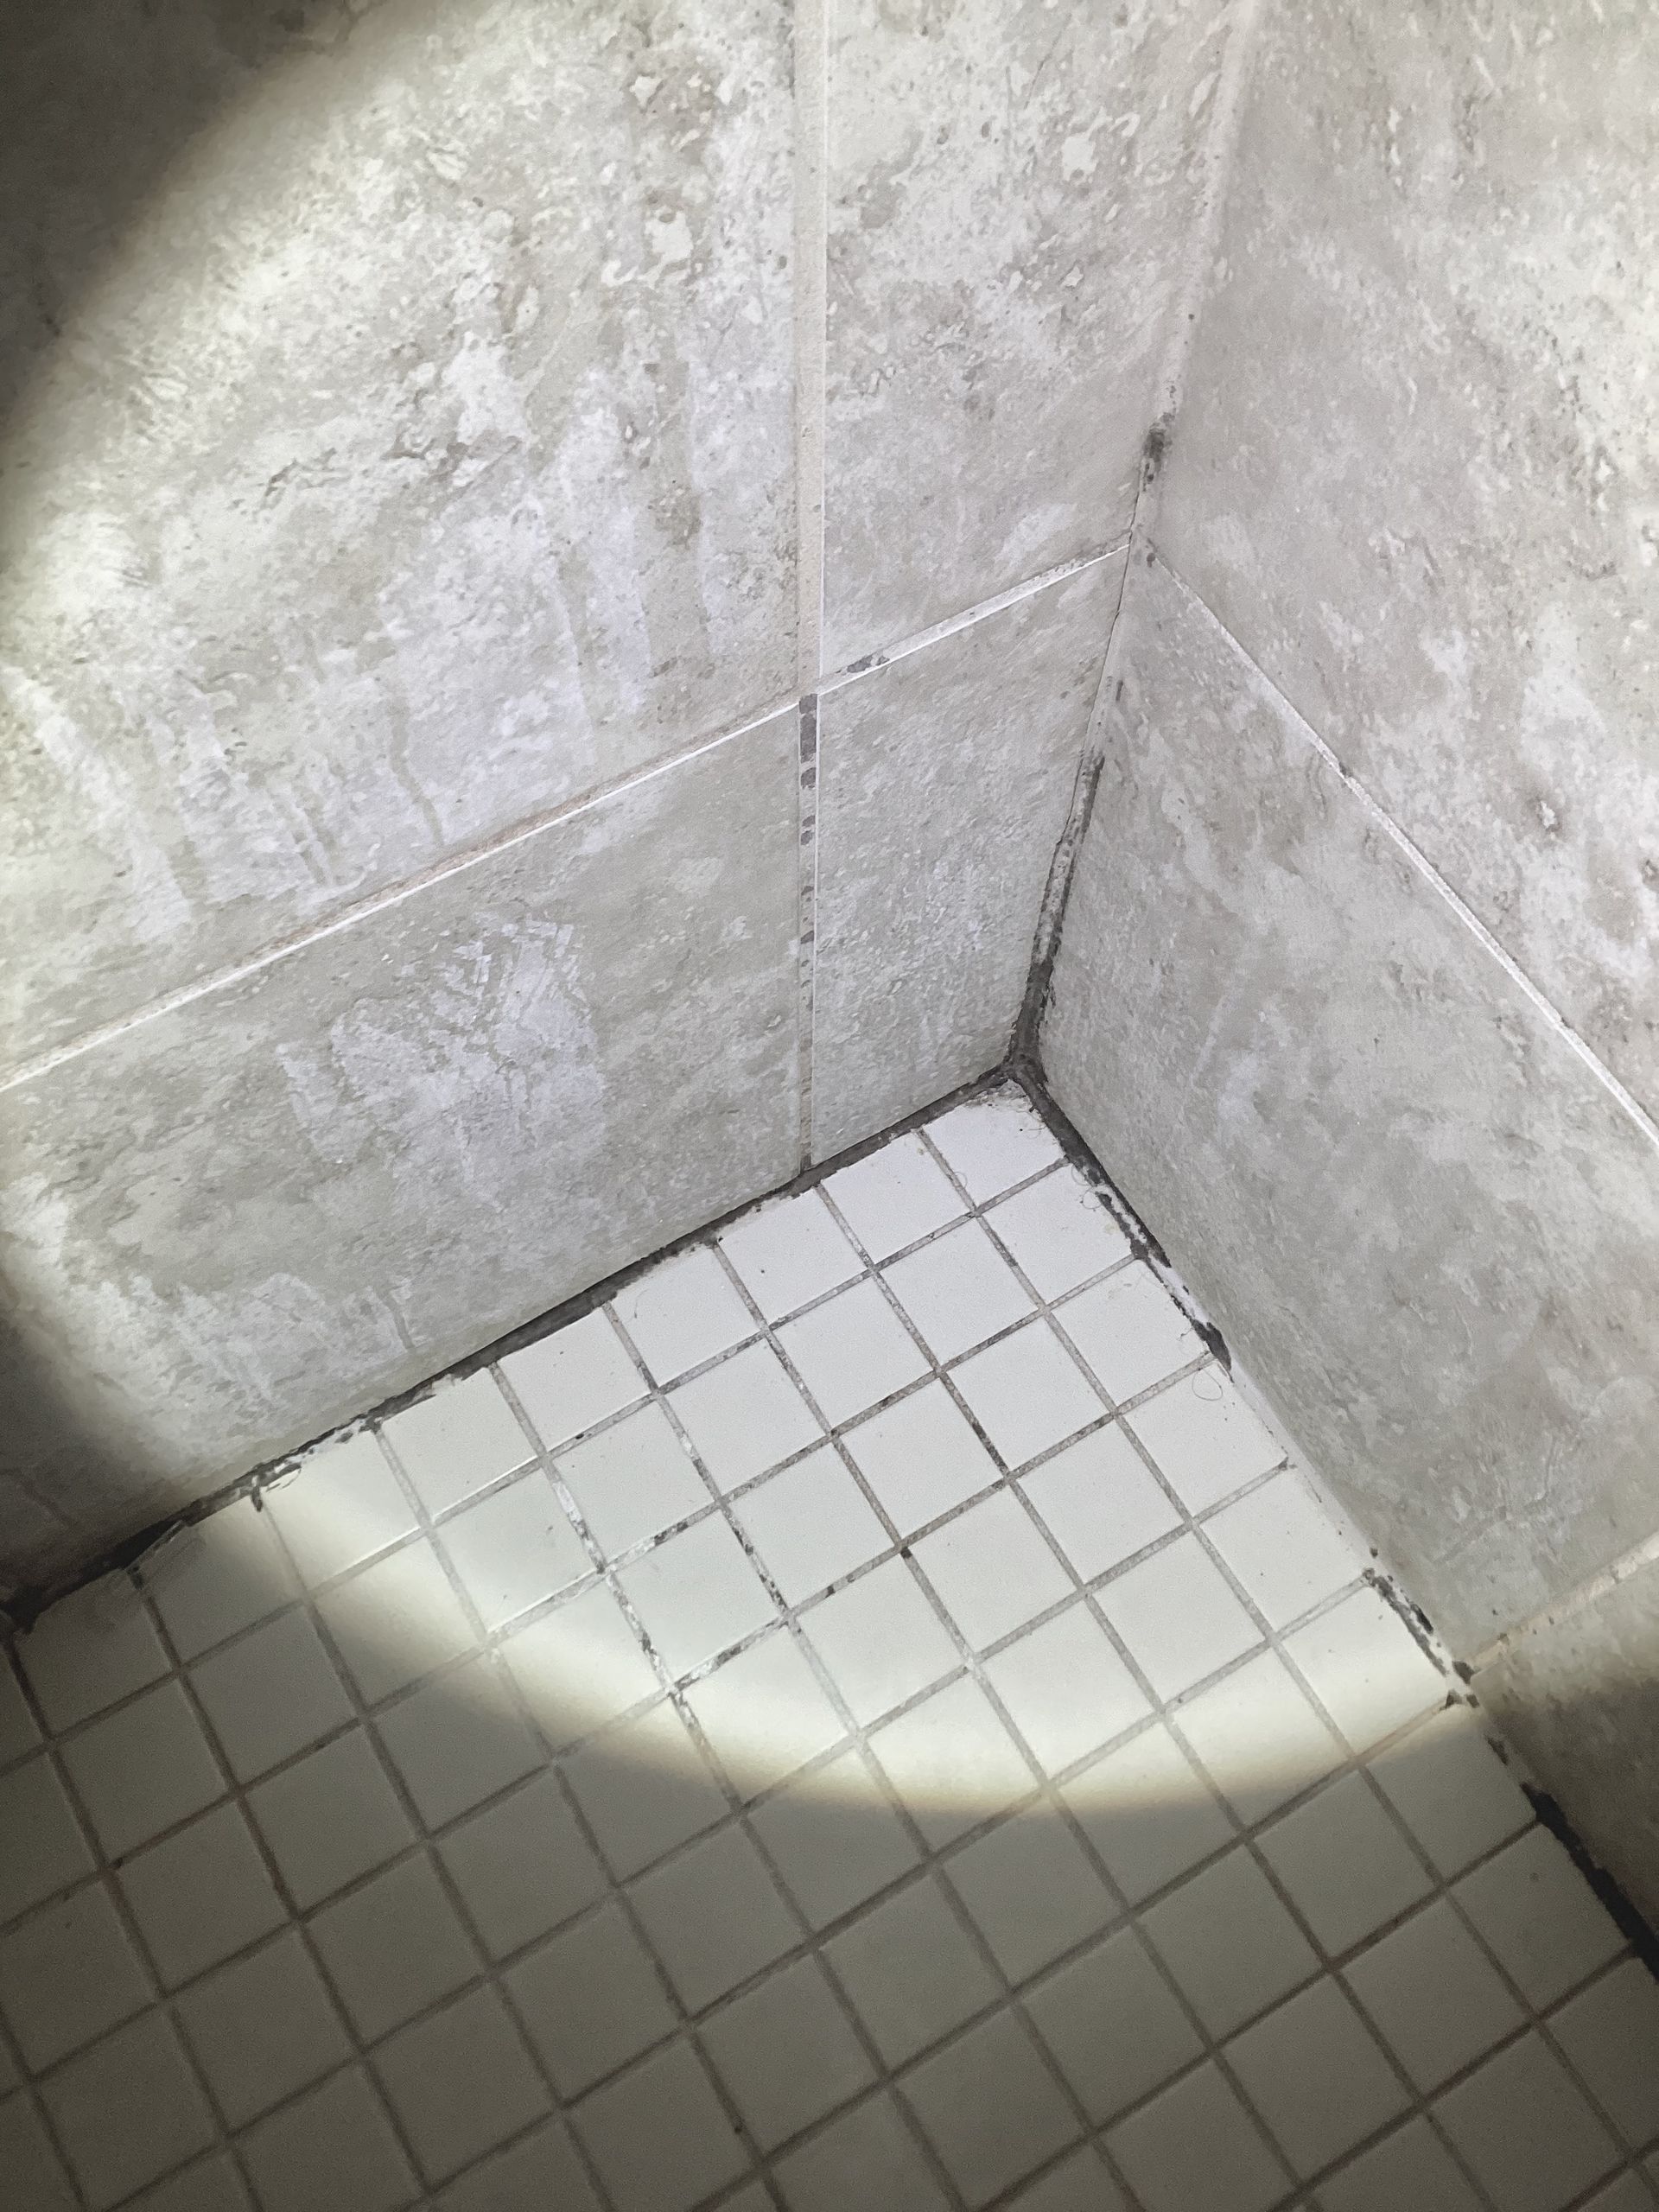 damp musty bathroom mold bathtub shower bad grout